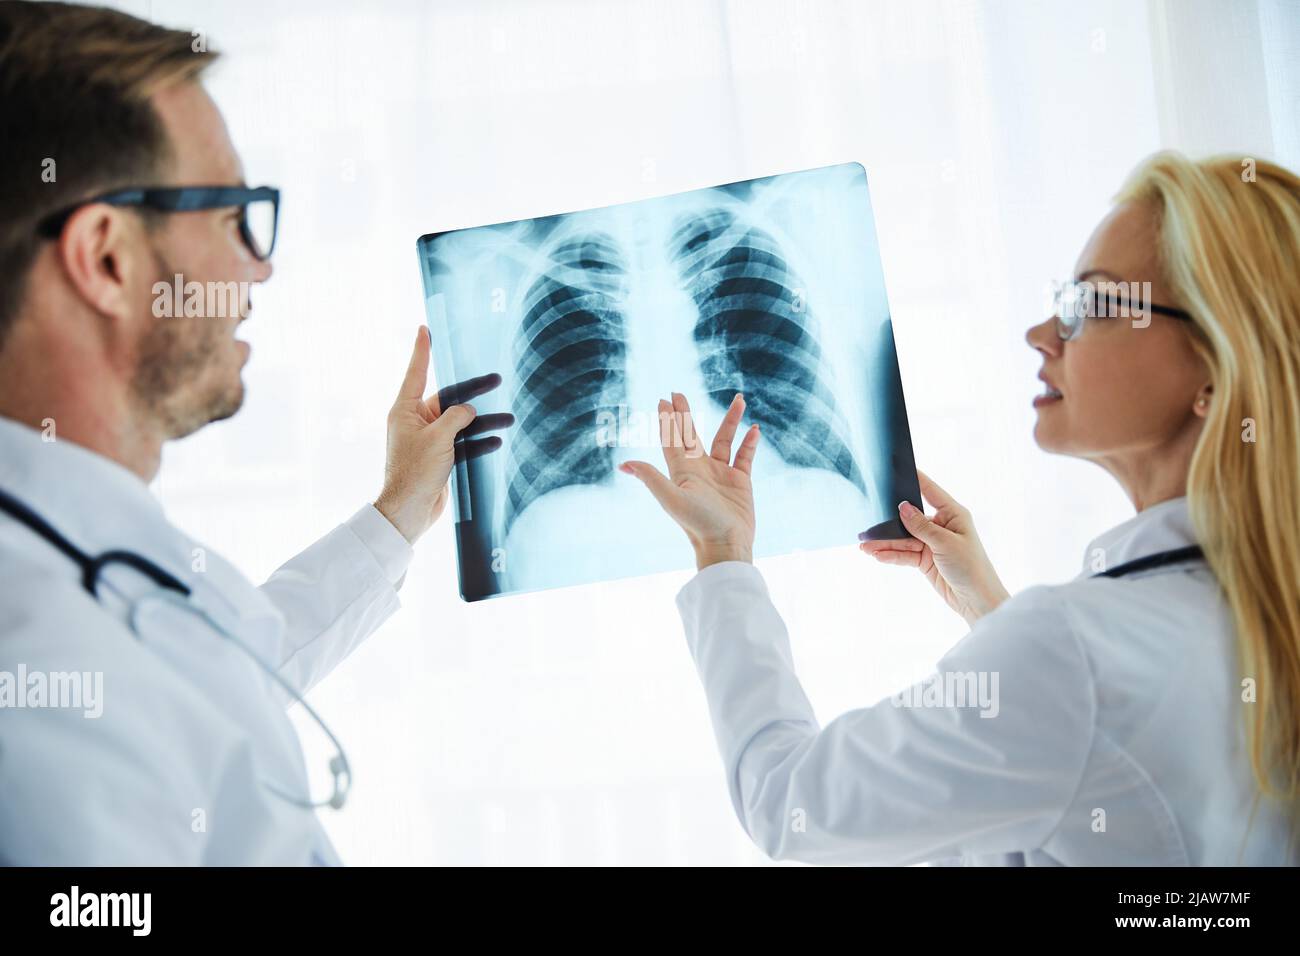 médecin hospita medica médecine santé clinique de radiologie professionnel de santé radiologie diagnostic radiographie Banque D'Images